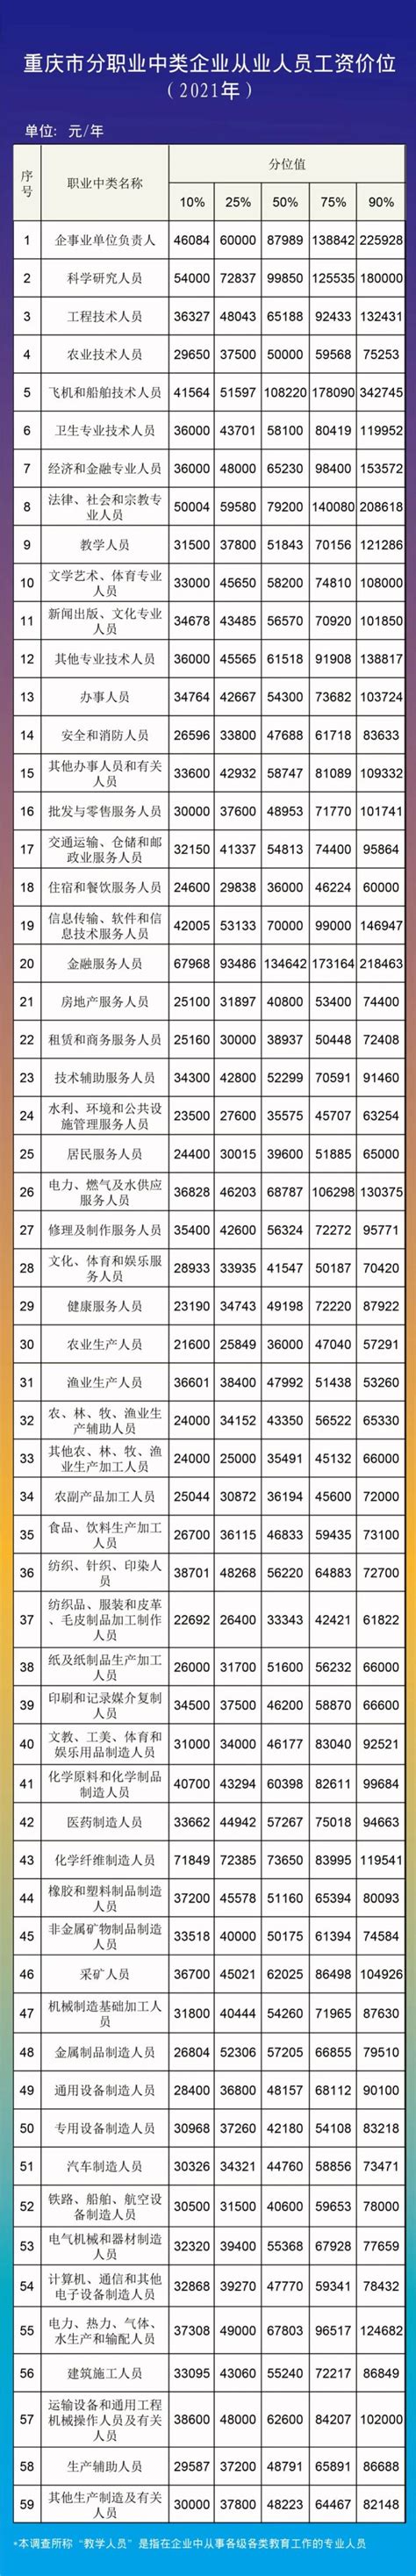 2018年重庆市城镇私营单位就业人员年平均工资52558元 - 重庆市统计局